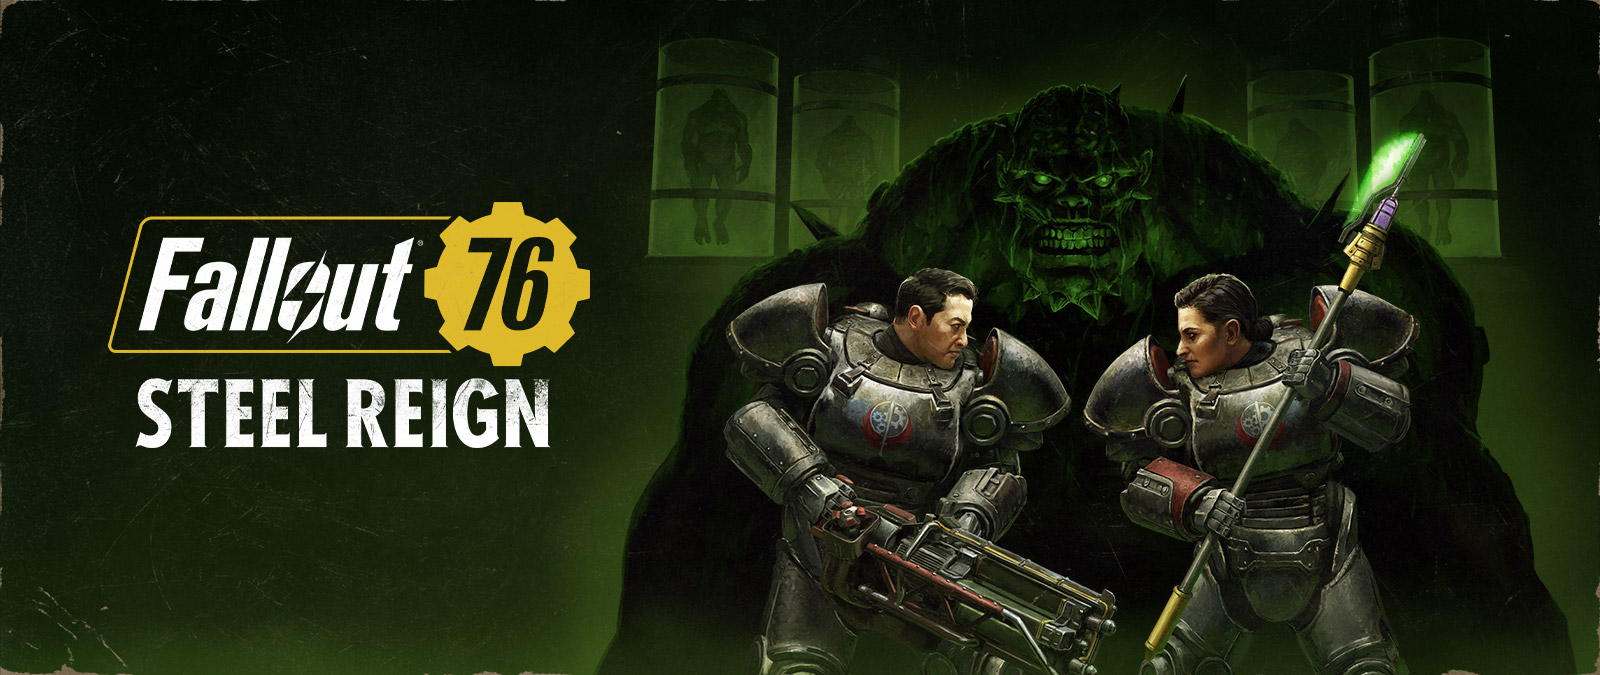 Fallout 76, Steel Reign, dwie postacie w kombinezonach mechów walczą z wielkim potworem w tle.